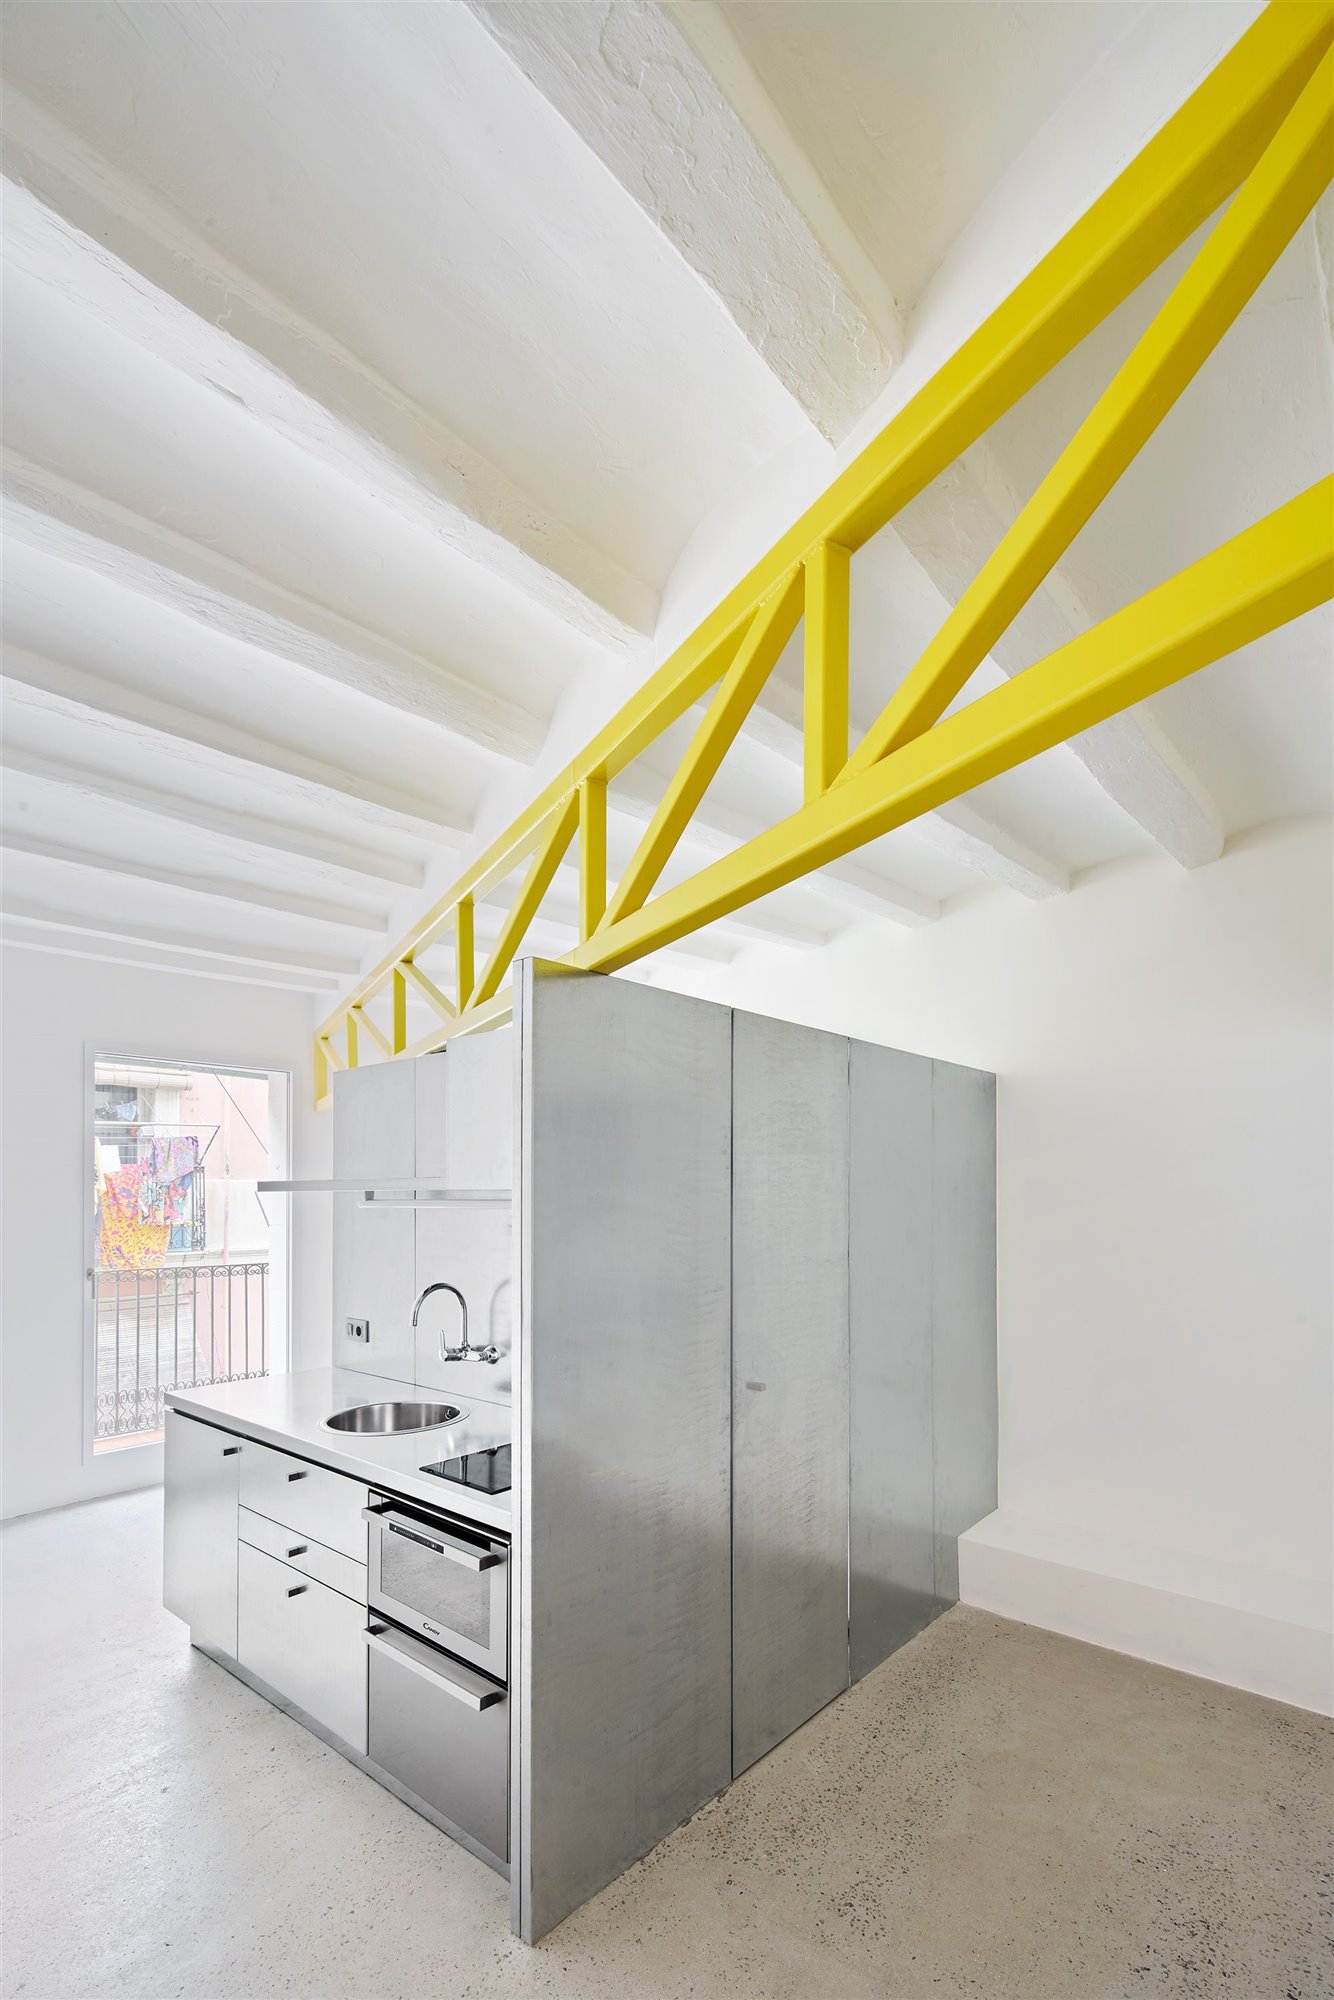 En el primer apartamento, la cercha amarilla no solo sirve de refuerzo estructural sino también de división visual. Foto: José Hevia